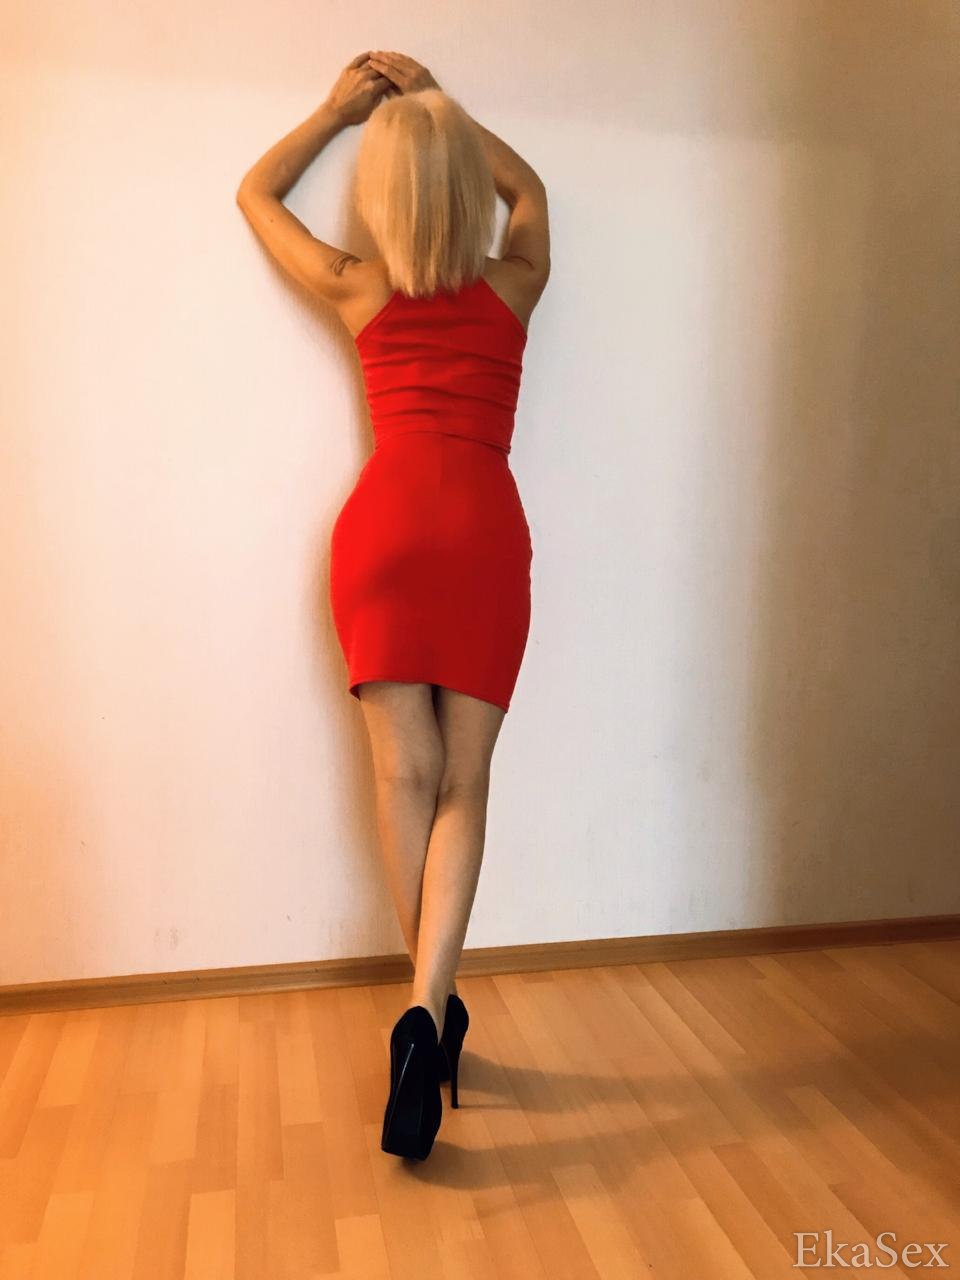 фото проститутки Вероника из города Екатеринбург